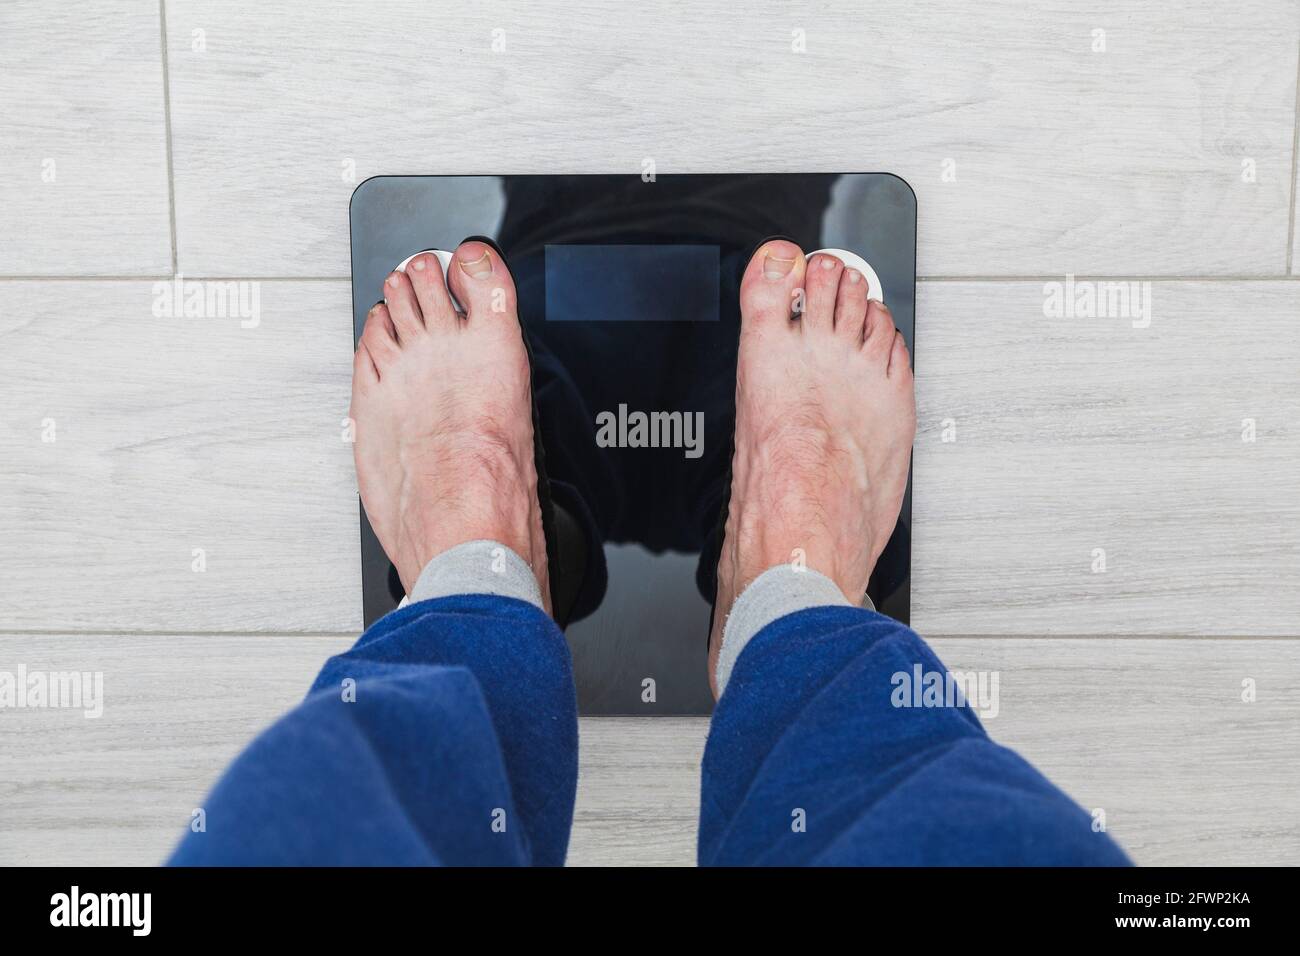 Los pies de un hombre irreconocible encima de una balanza electrónica donde  el peso no es visible. El hombre está usando pantalones de pijama azules y  el suelo es Fotografía de stock -